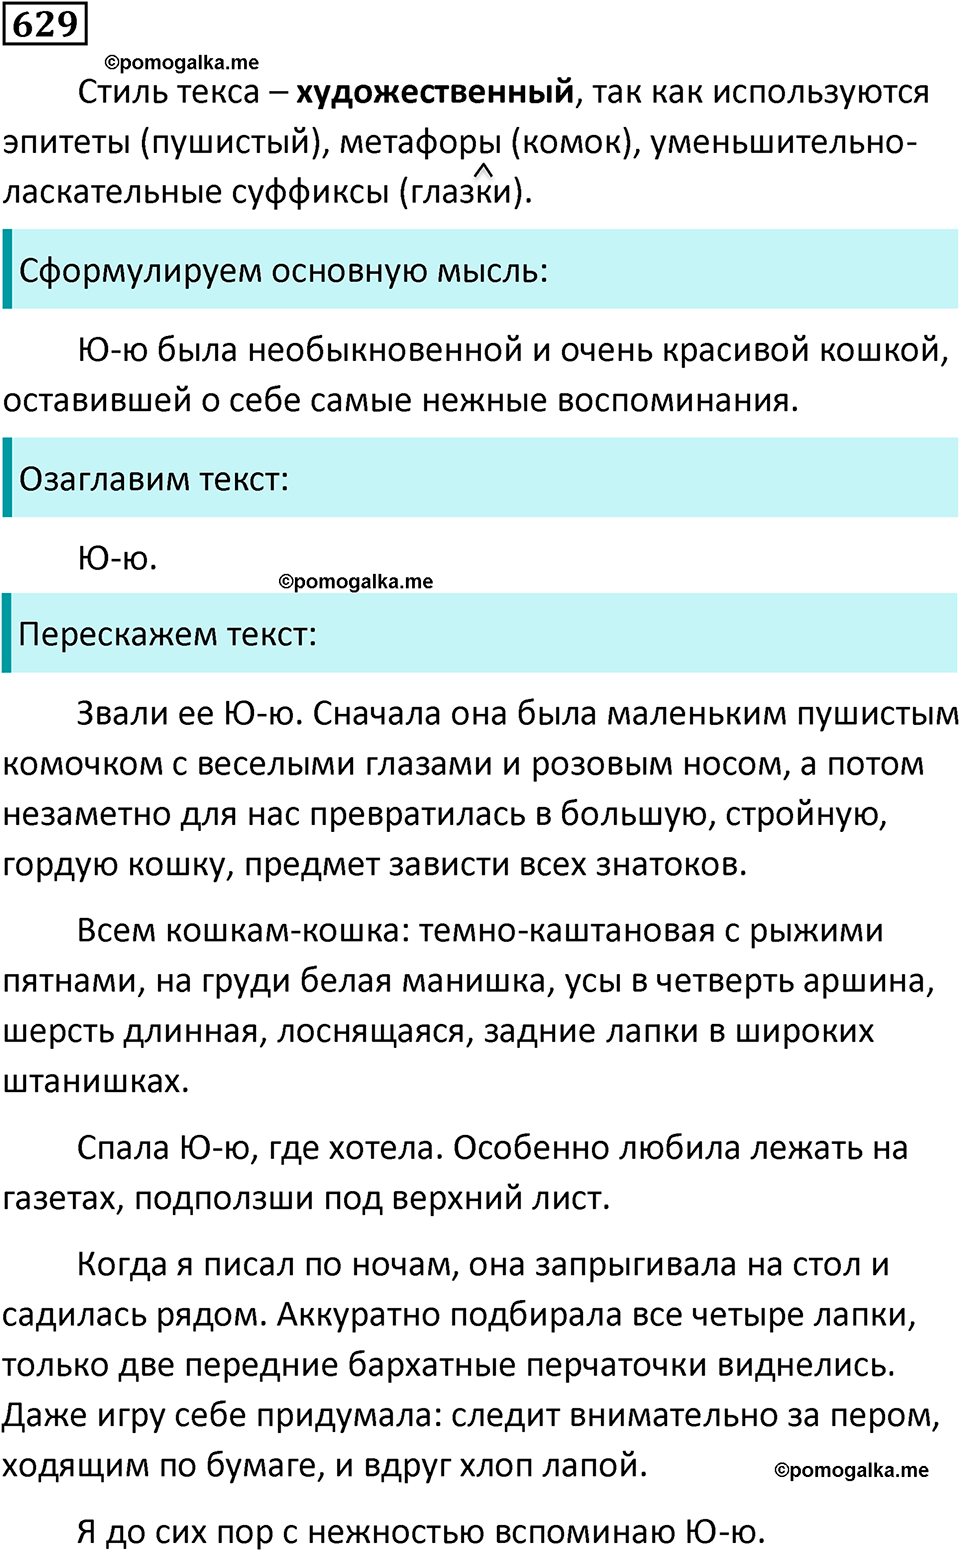 упражнение 629 русский язык 5 класс Ладыженская, Баранов, Тростенцова, Григорян 2020 год